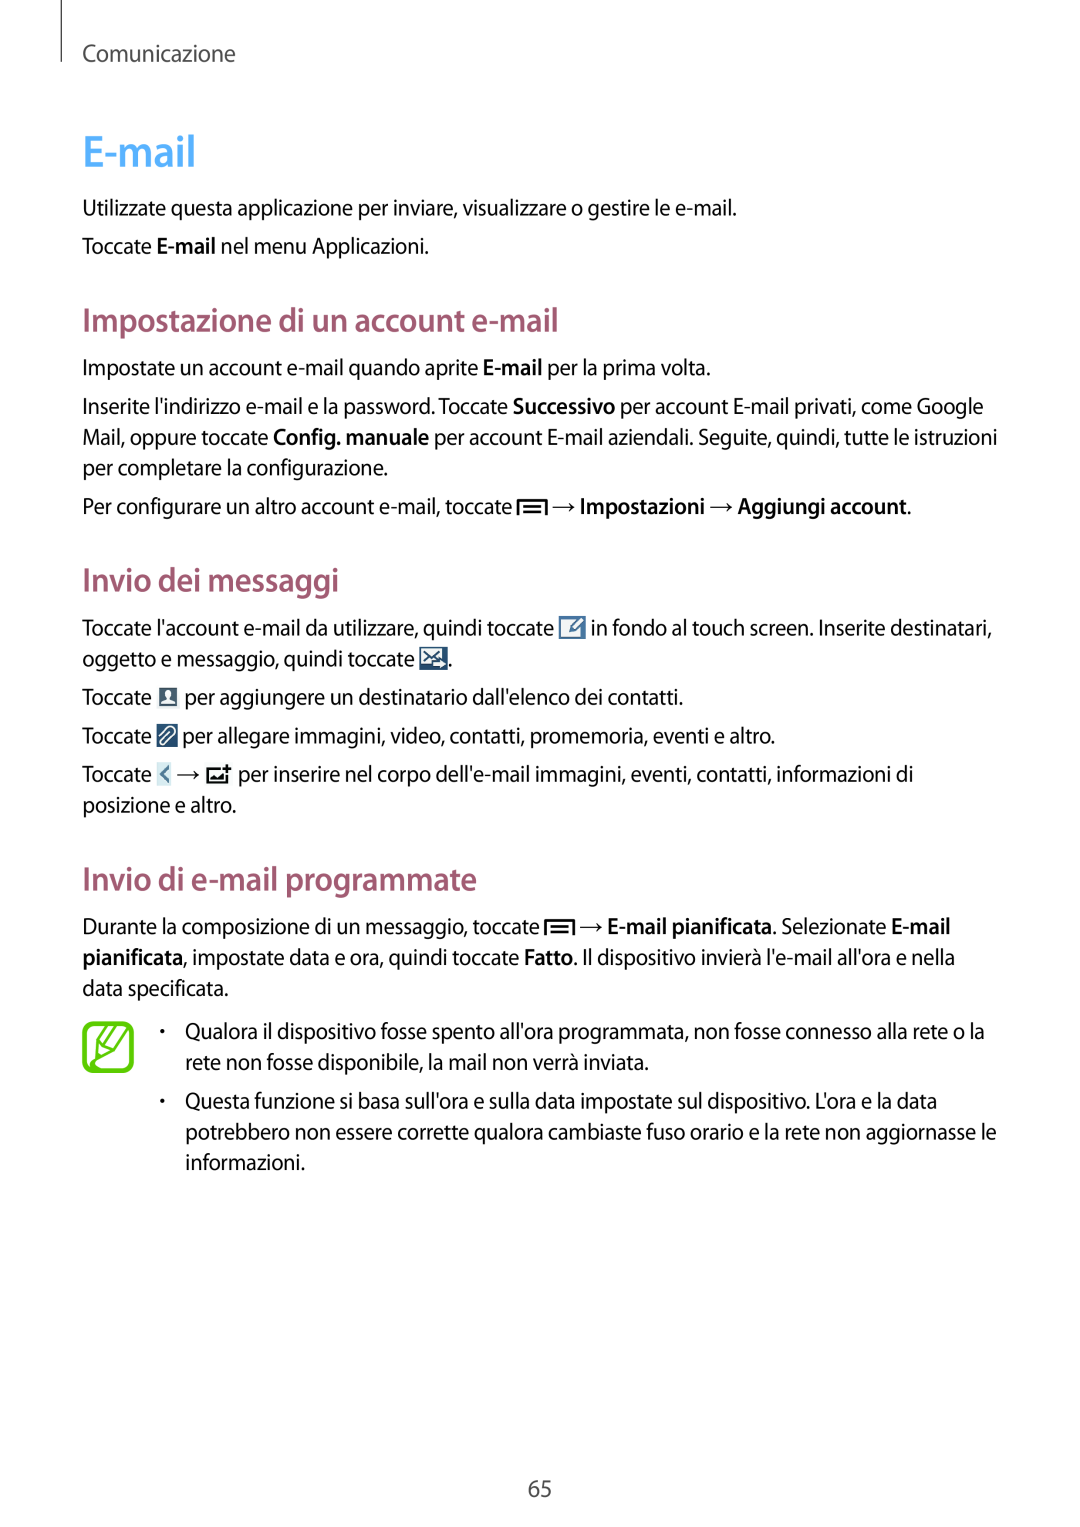 Samsung GT-N7100RWDOMN manual E-mail, Impostazione di un account e-mail, Invio di e-mail programmate, Invio dei messaggi 